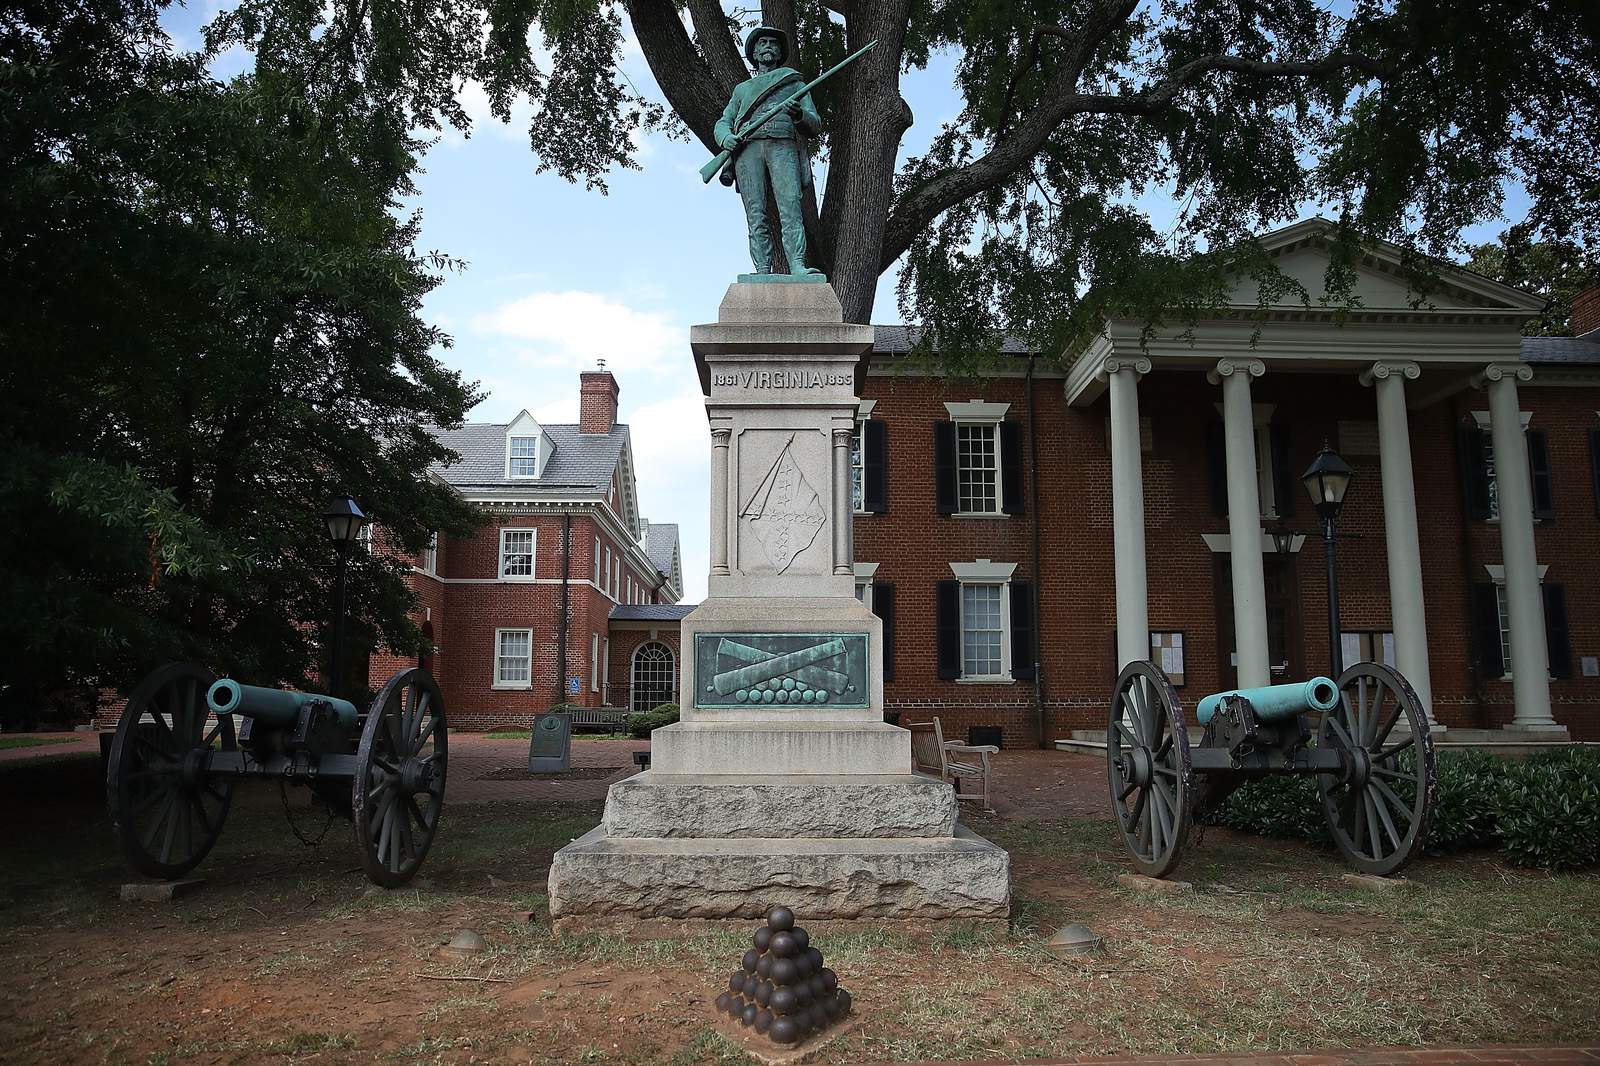 Charlottesville removes Confederate statue near rally site